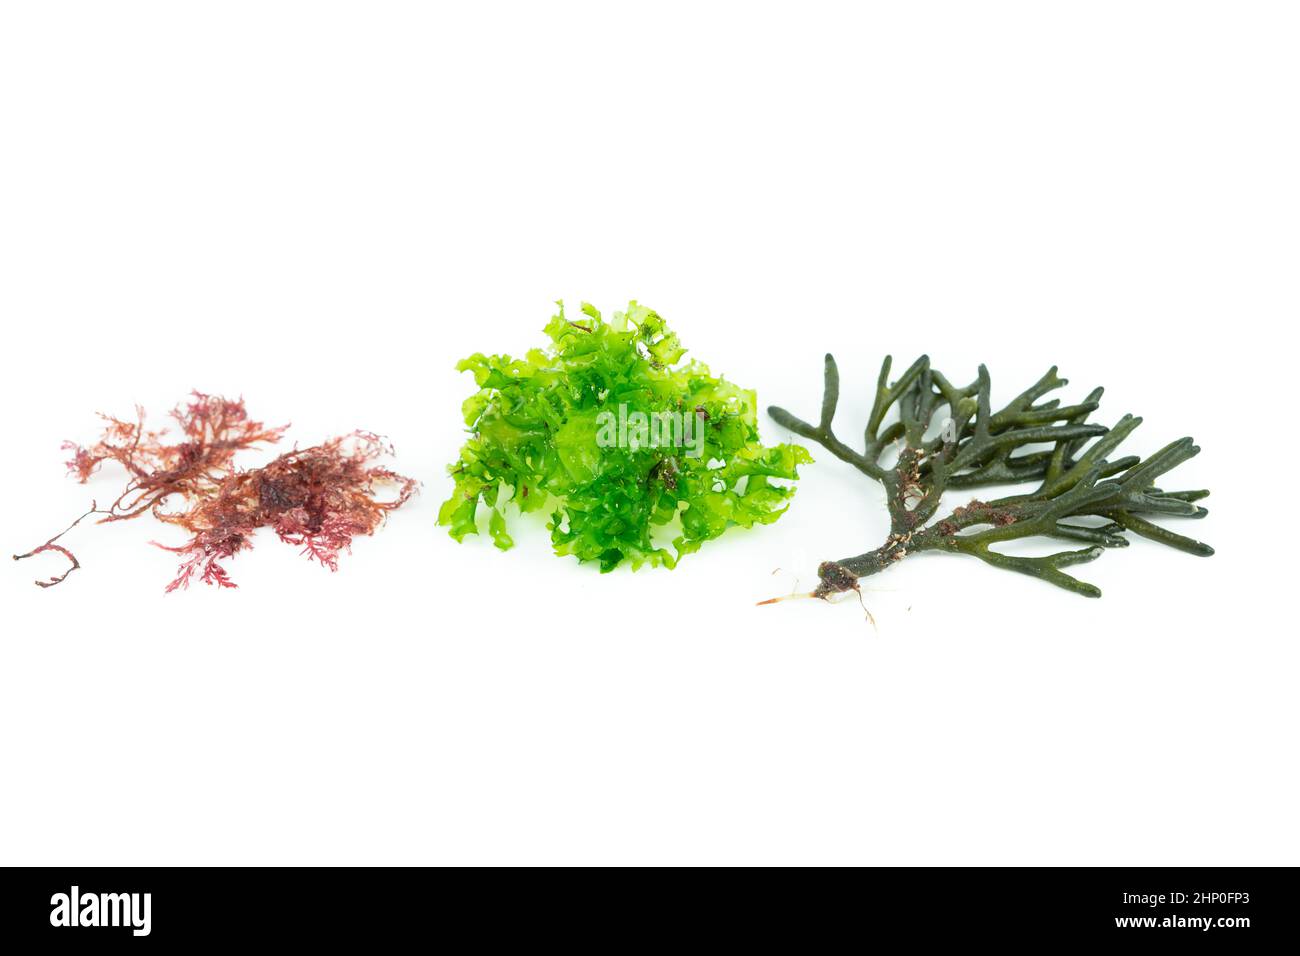 Drei verschiedene Algenarten auf weißem Hintergrund. Codium tomentosum, Gelidium, Ulva lactuca. Draufsicht. Stockfoto